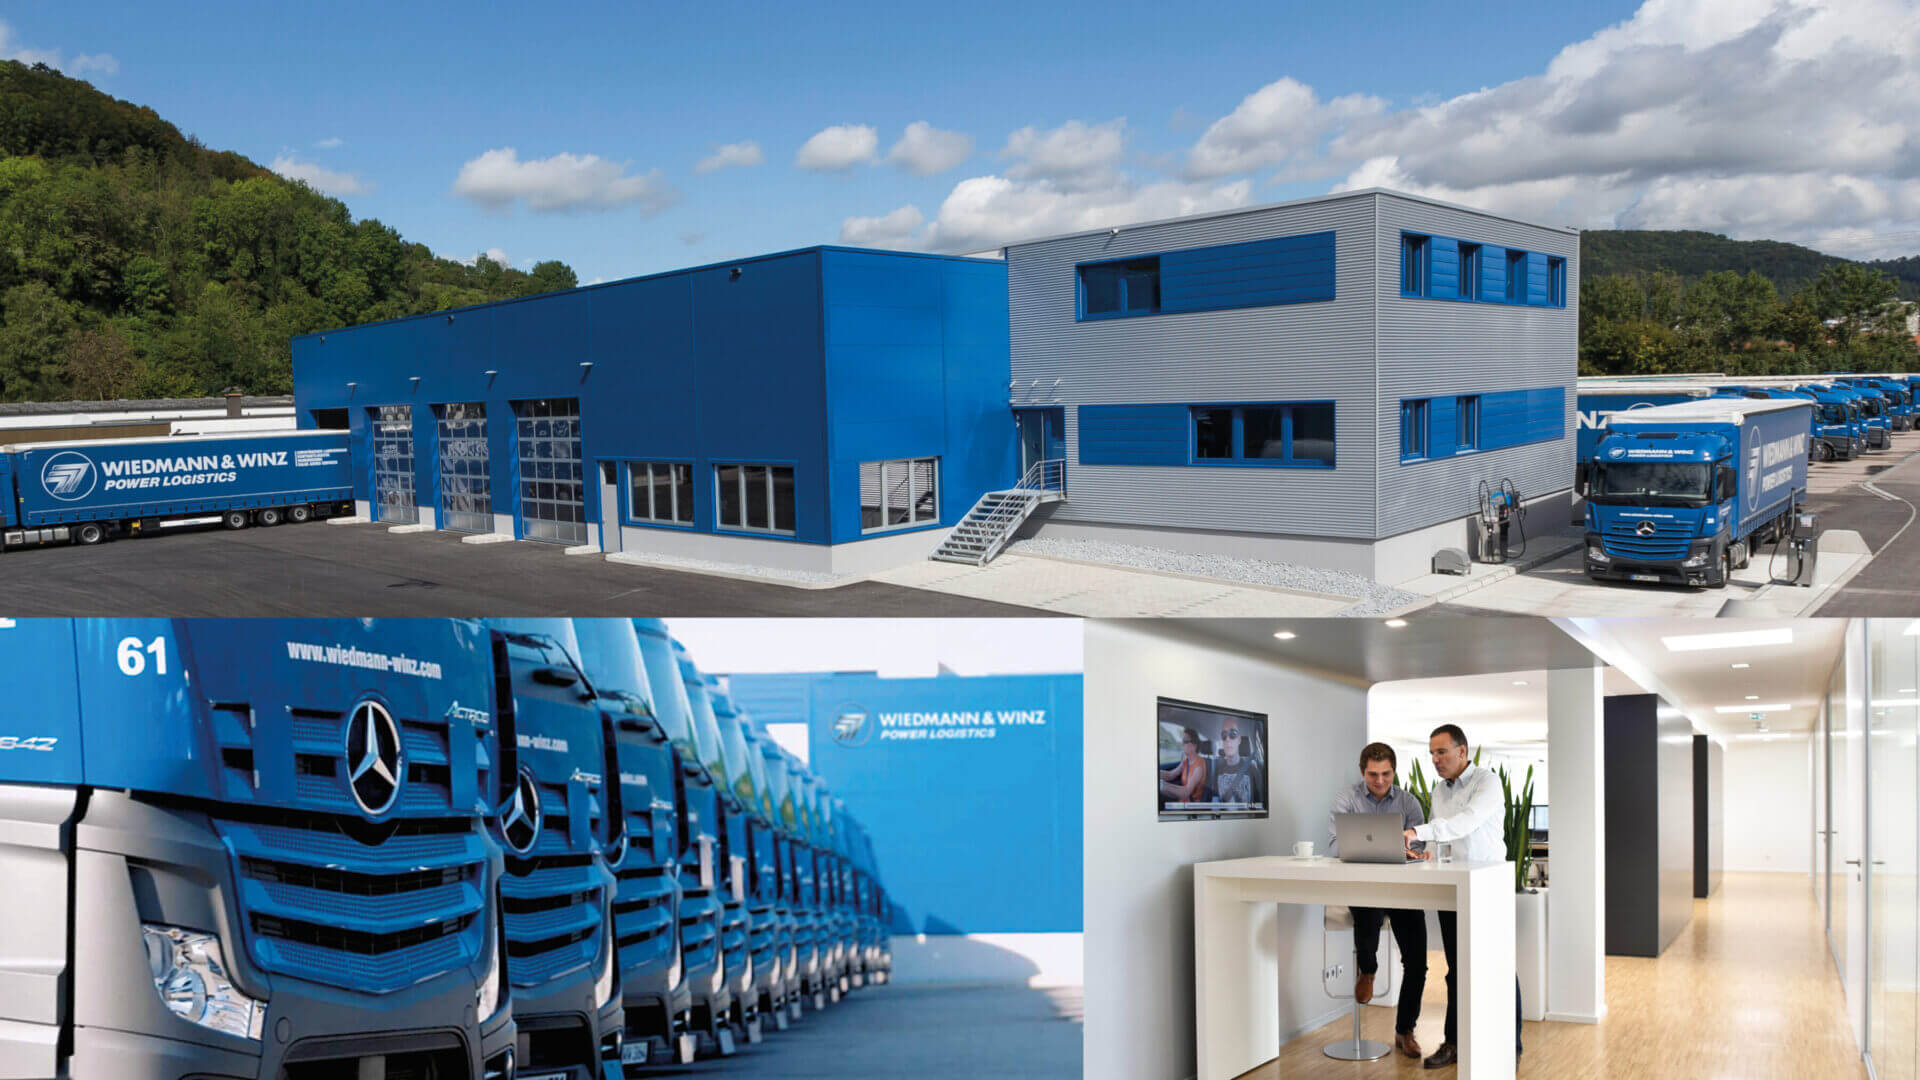 Eine Bildkollage zeigt eine LKW-Werkstatt, viele Mercedes-Benz LKW und ein neues Büro mit 2 Personen.